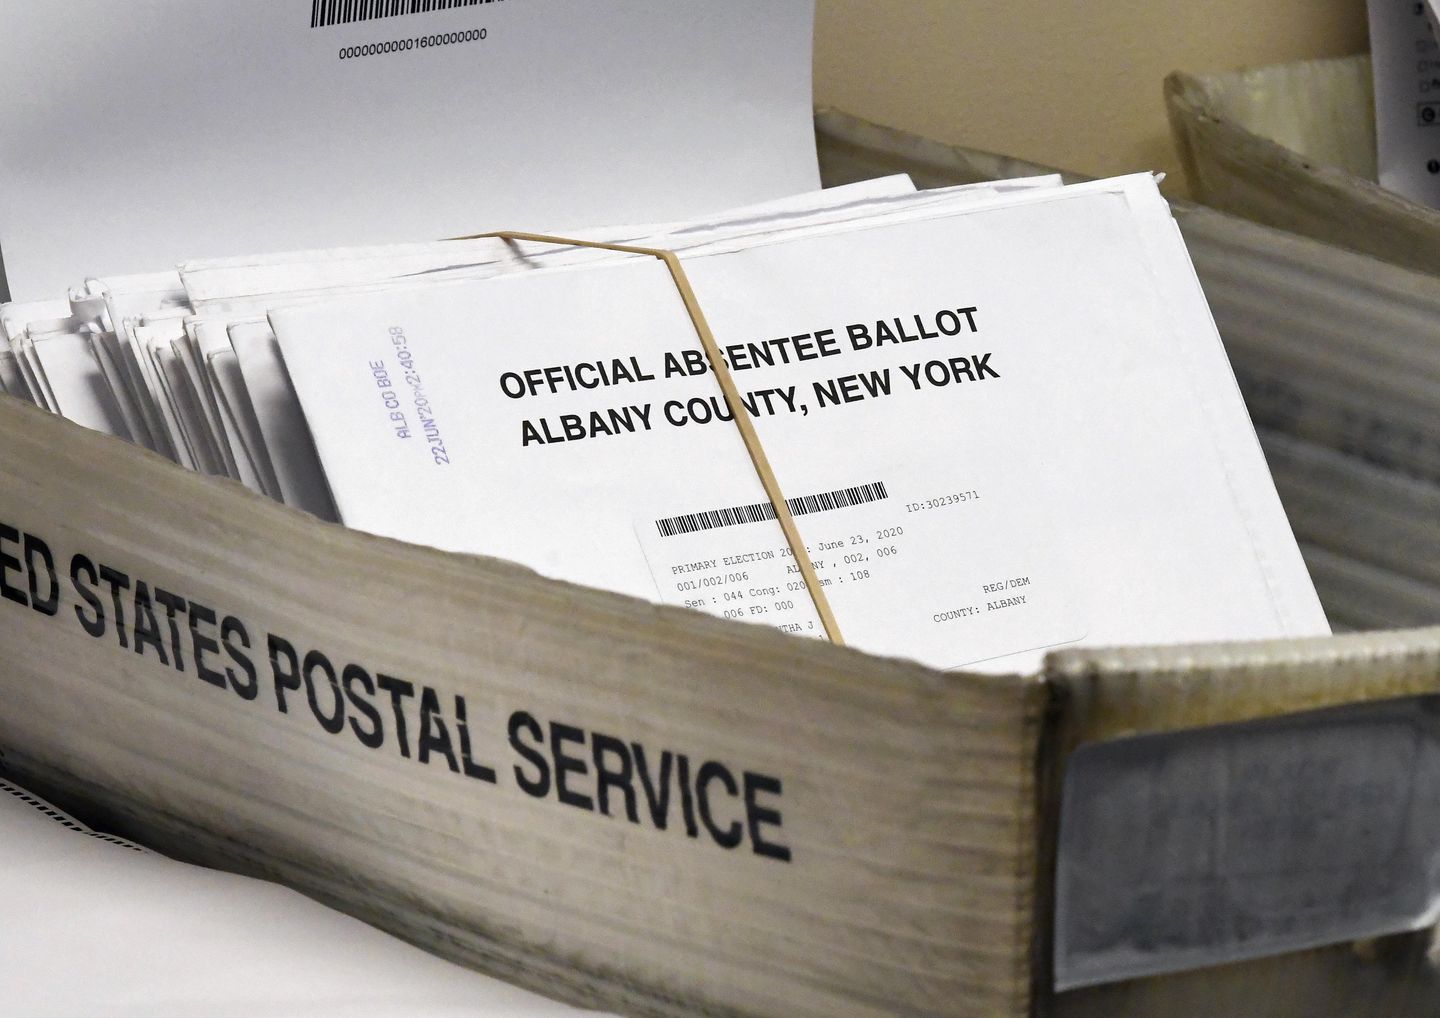 Jason Schofield, pejabat pemilu NY, mengaku bersalah atas penipuan surat suara